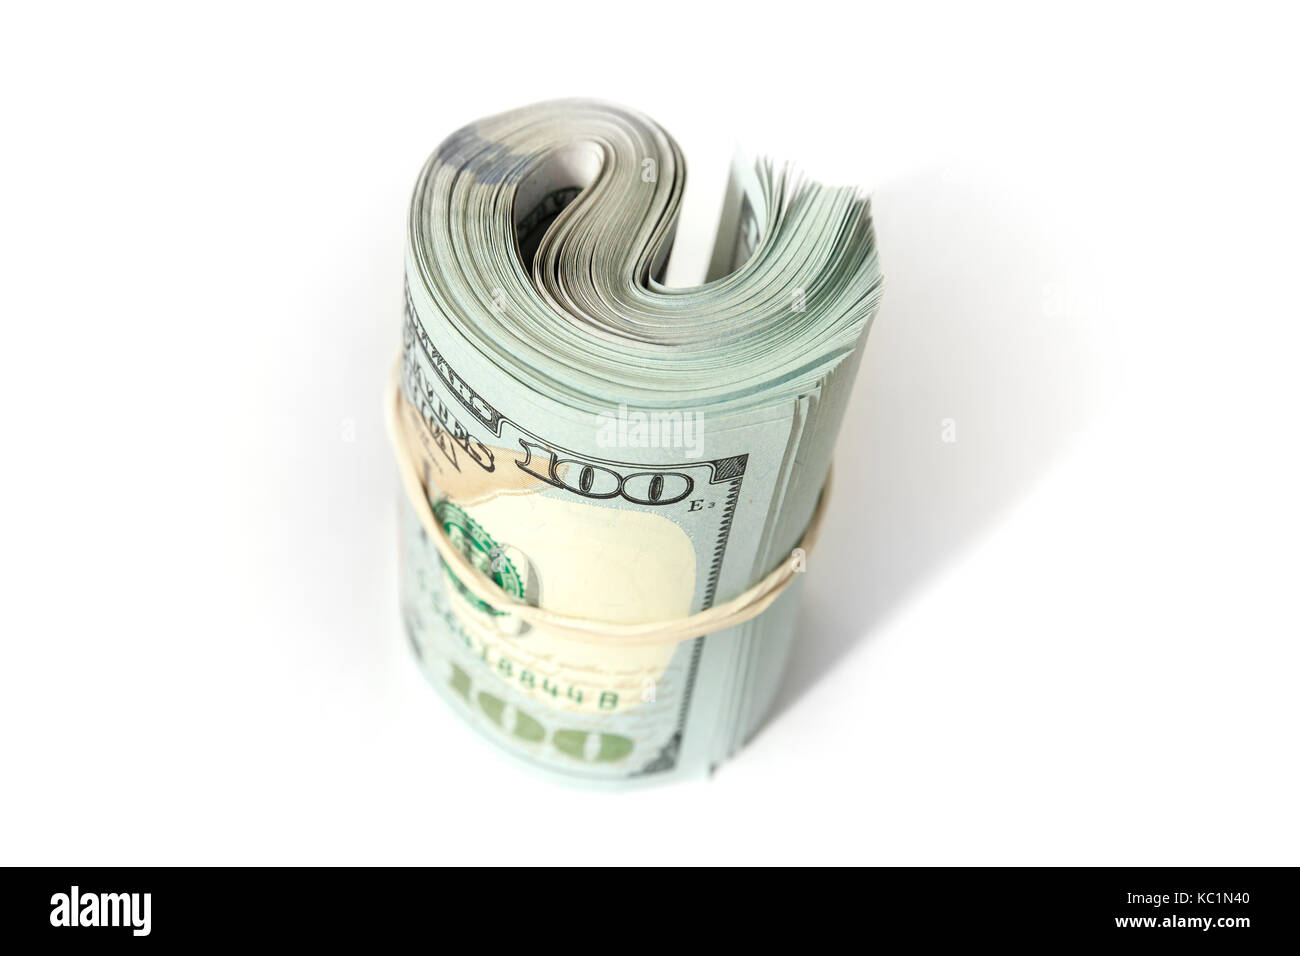 Stati Uniti valuta ufficiale, rotolo di un centinaio di dollari sorge isolato su sfondo bianco con ombra morbida Foto Stock